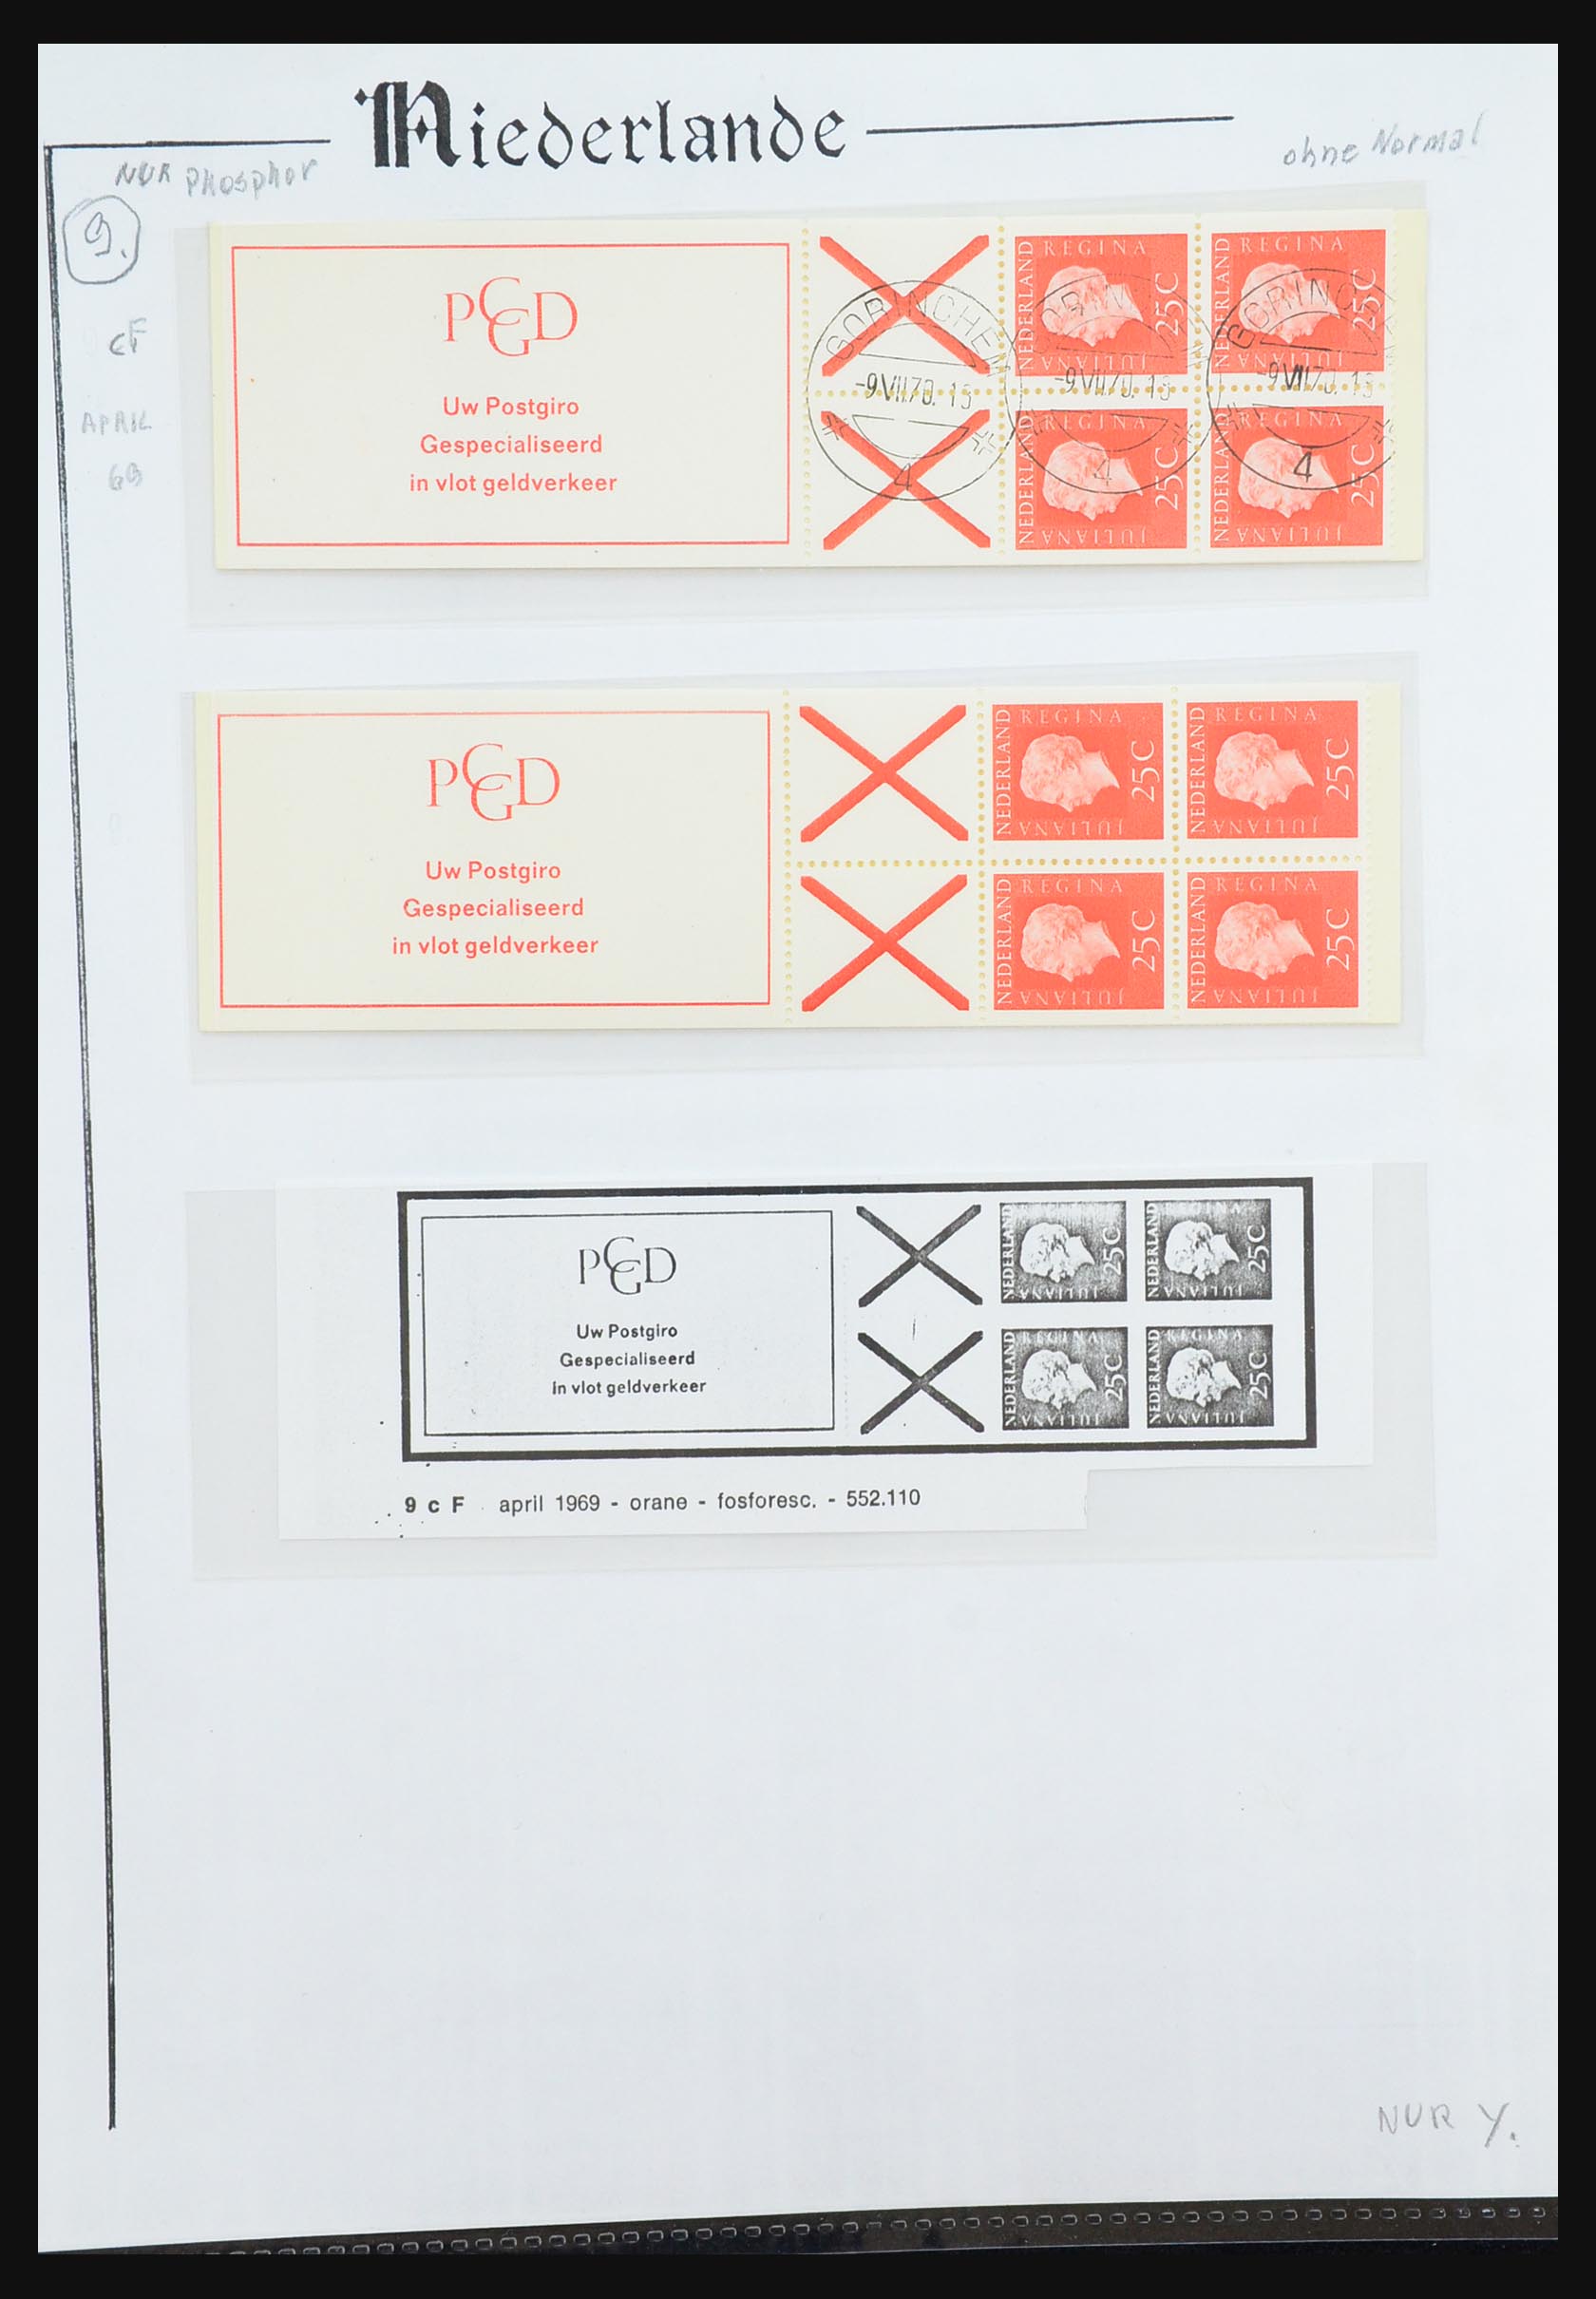 31311 039 - 31311 Netherlands stamp booklets 1964-1994.